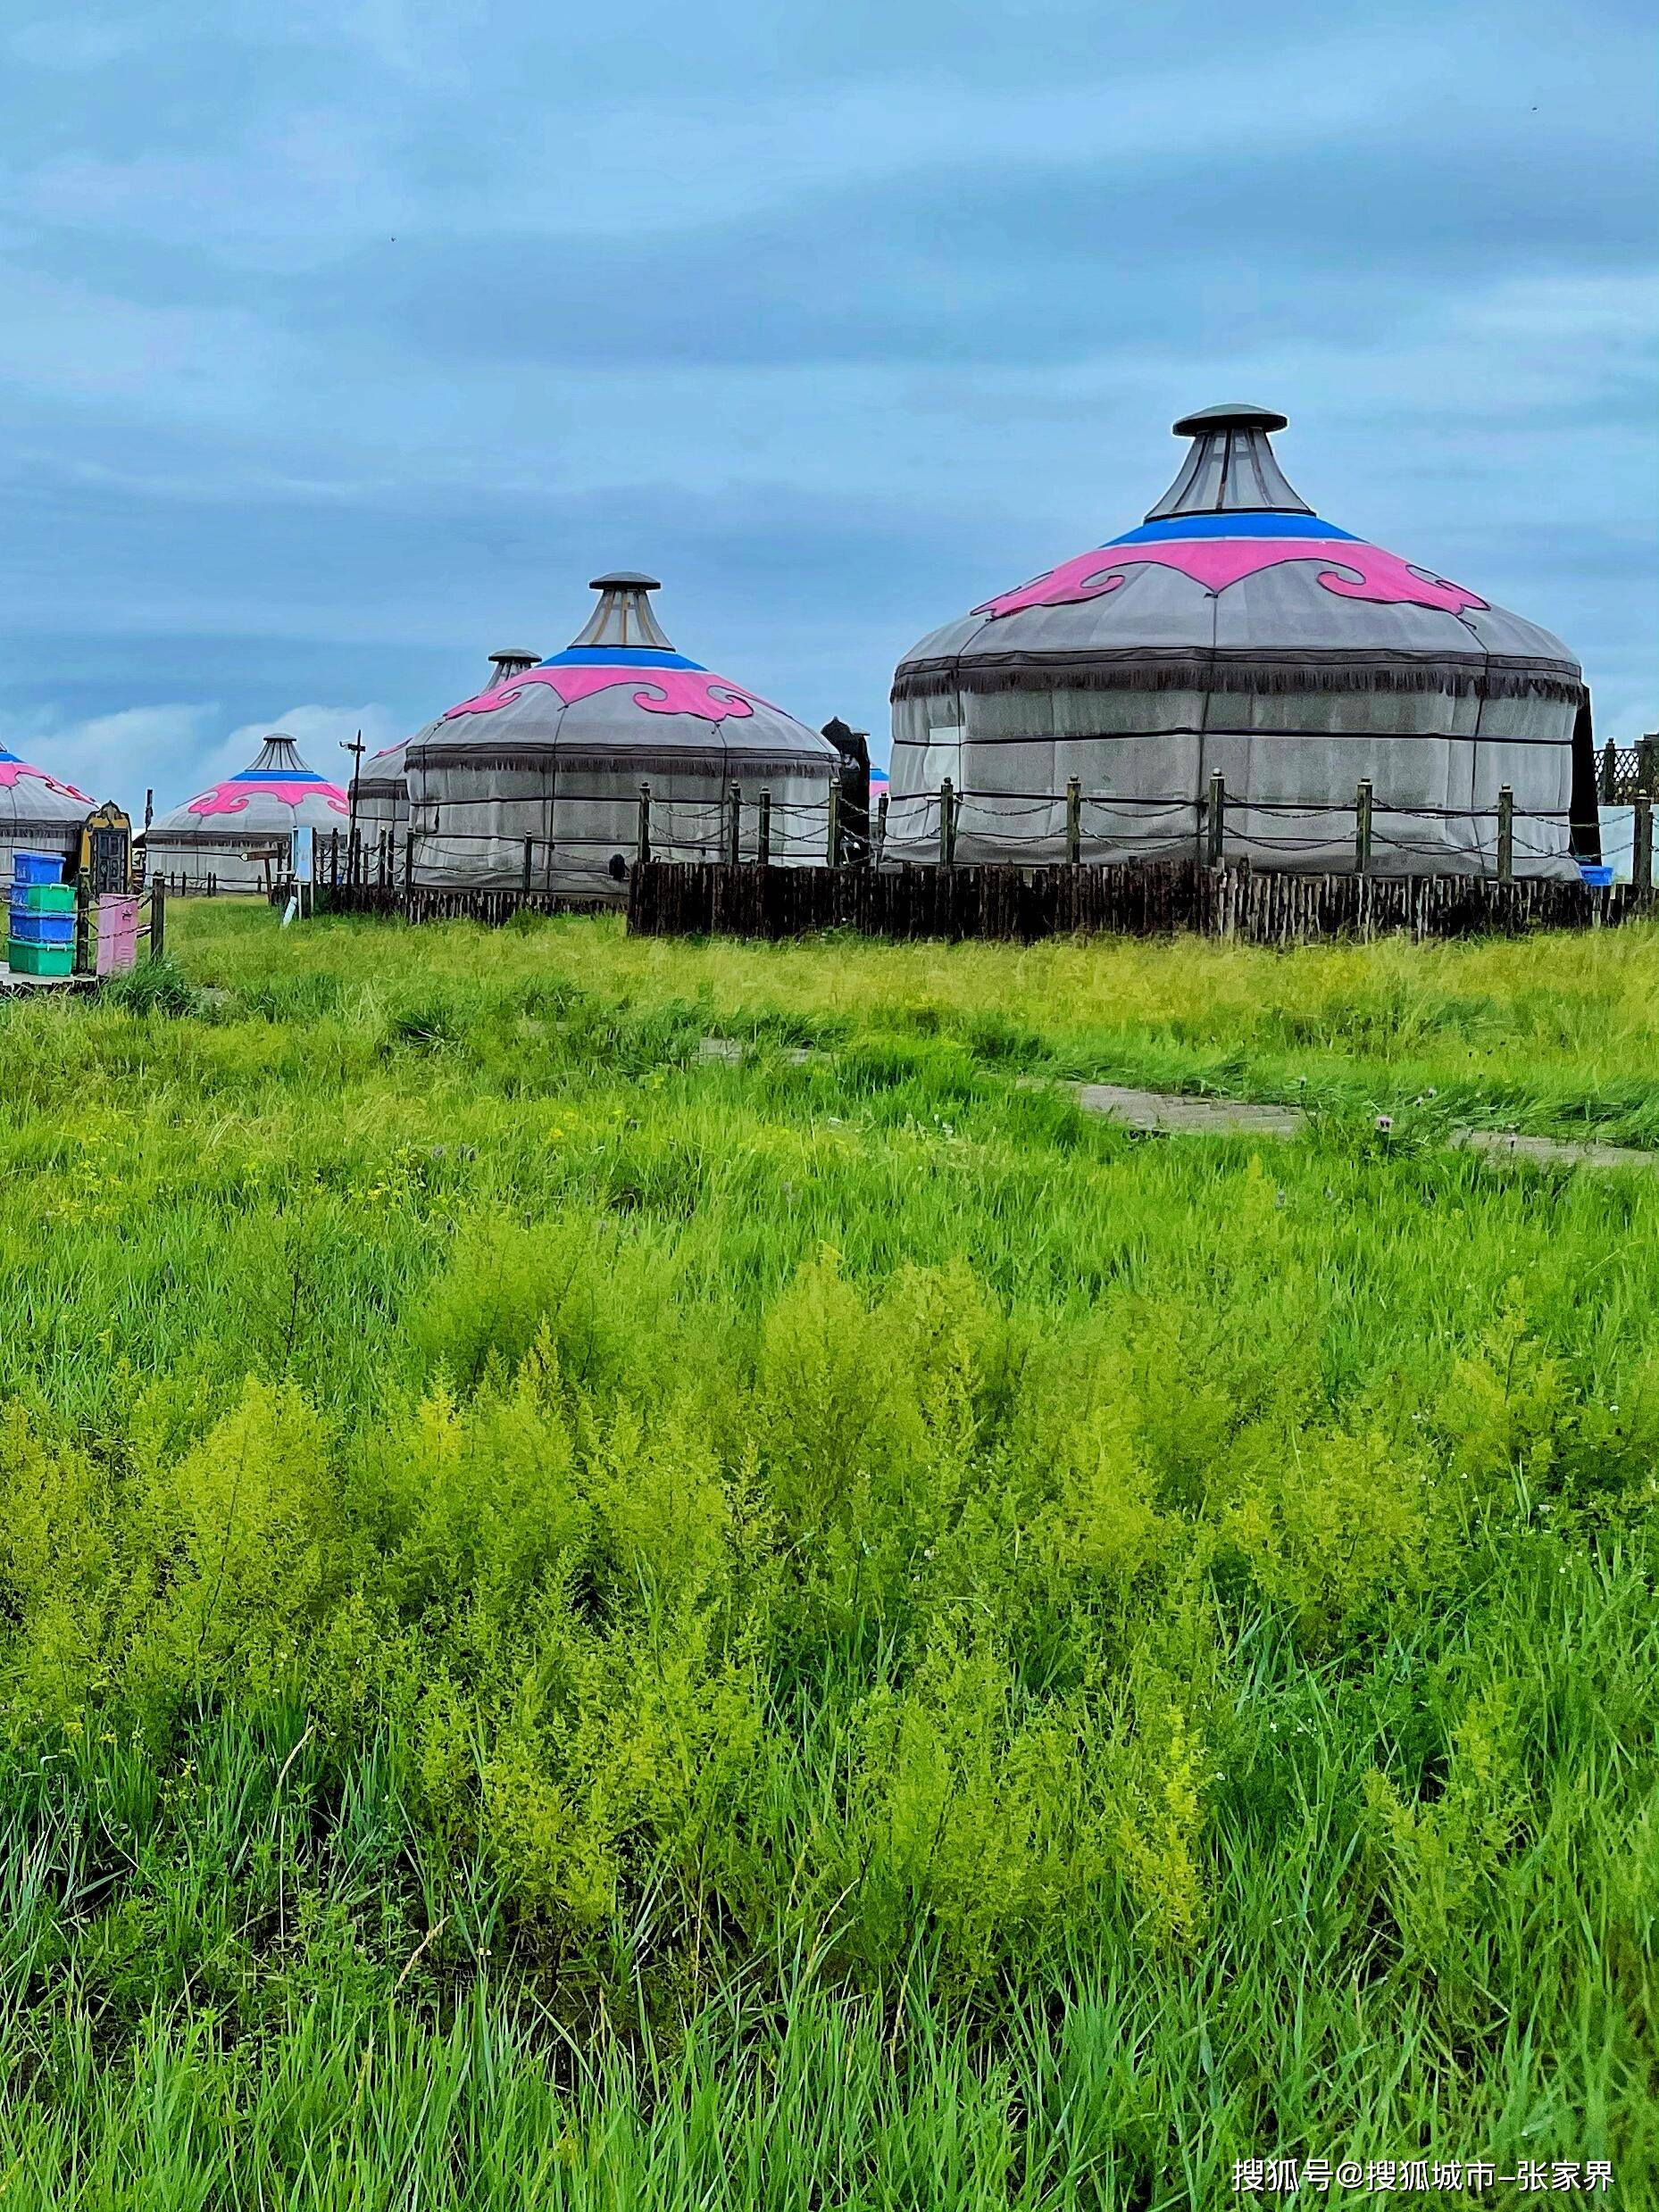 近期去内蒙古呼伦贝尔大草原旅游注意事项及花费开销详情了解,看完就